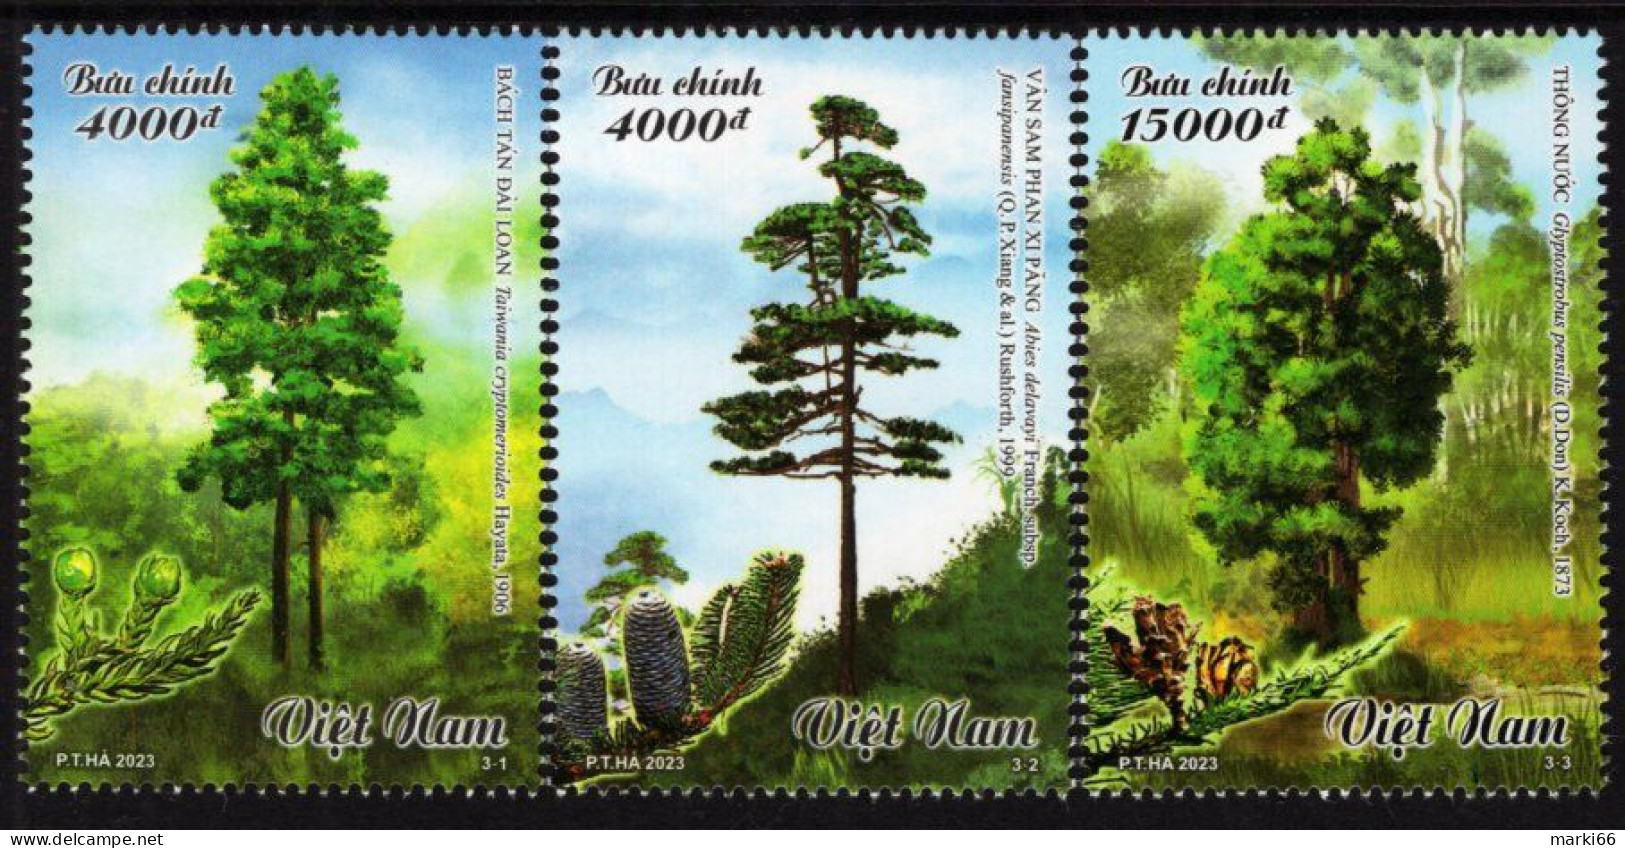 Vietnam - 2023 - Precious Timber Trees - Mint Stamp Set - Vietnam